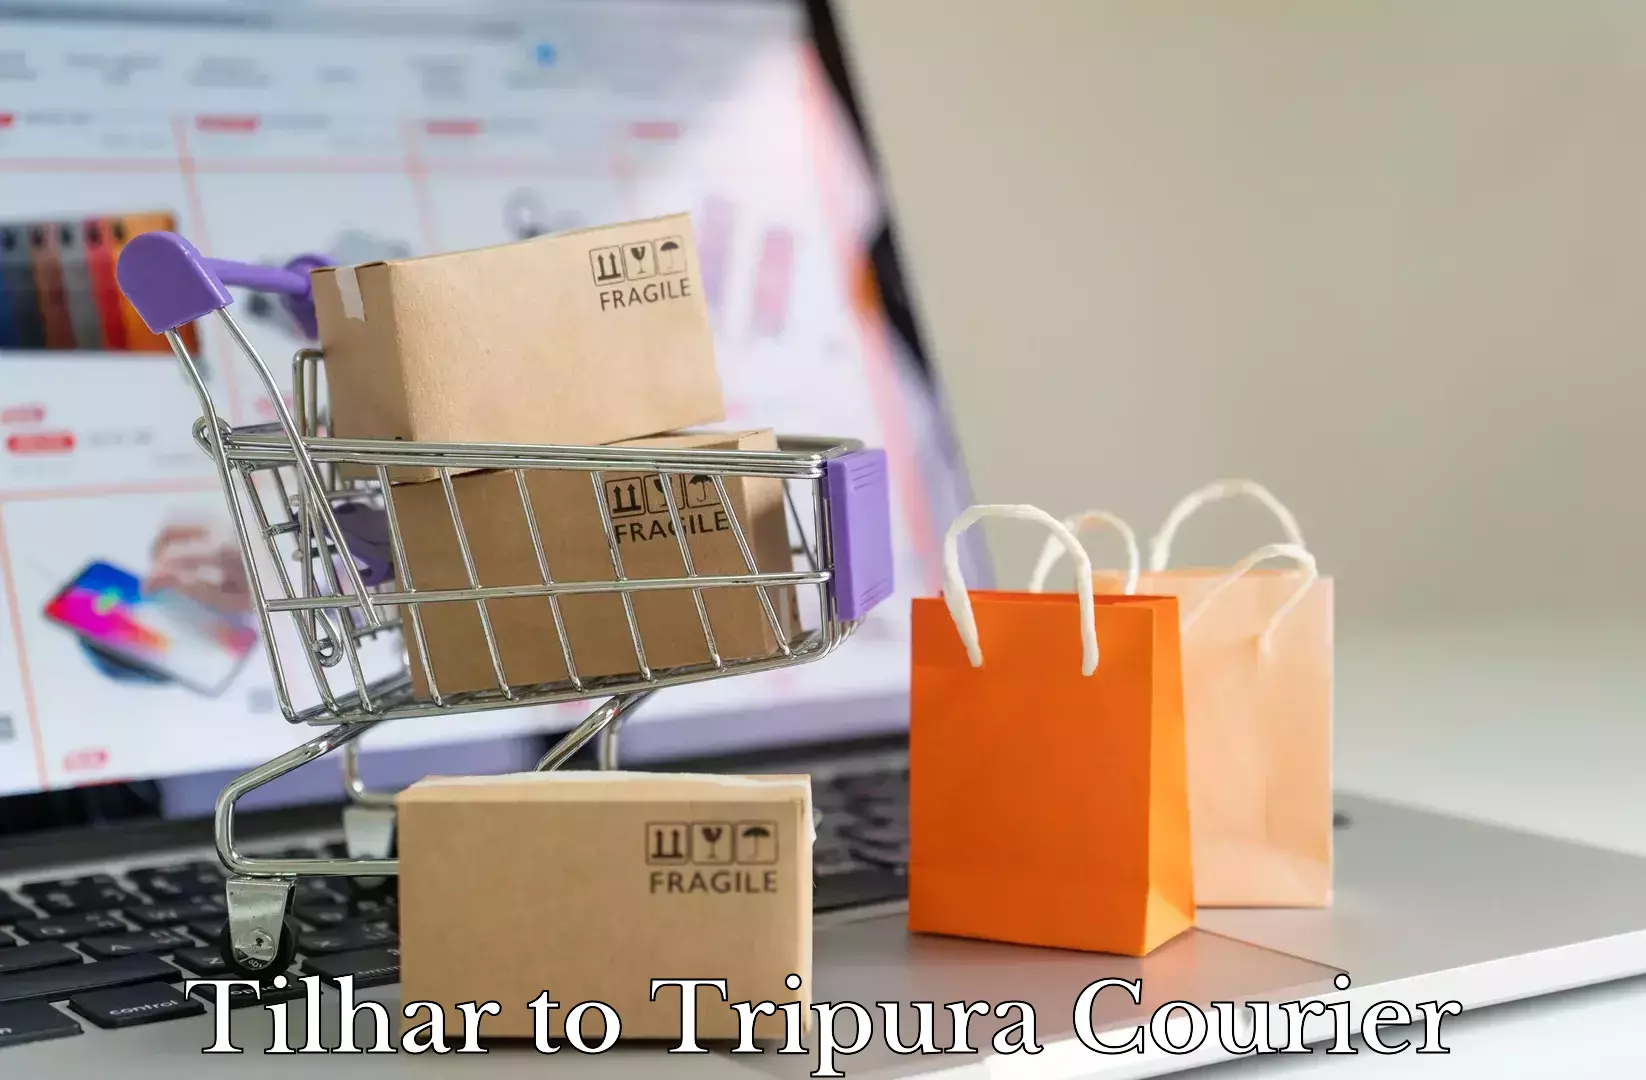 Furniture transport service Tilhar to Udaipur Tripura